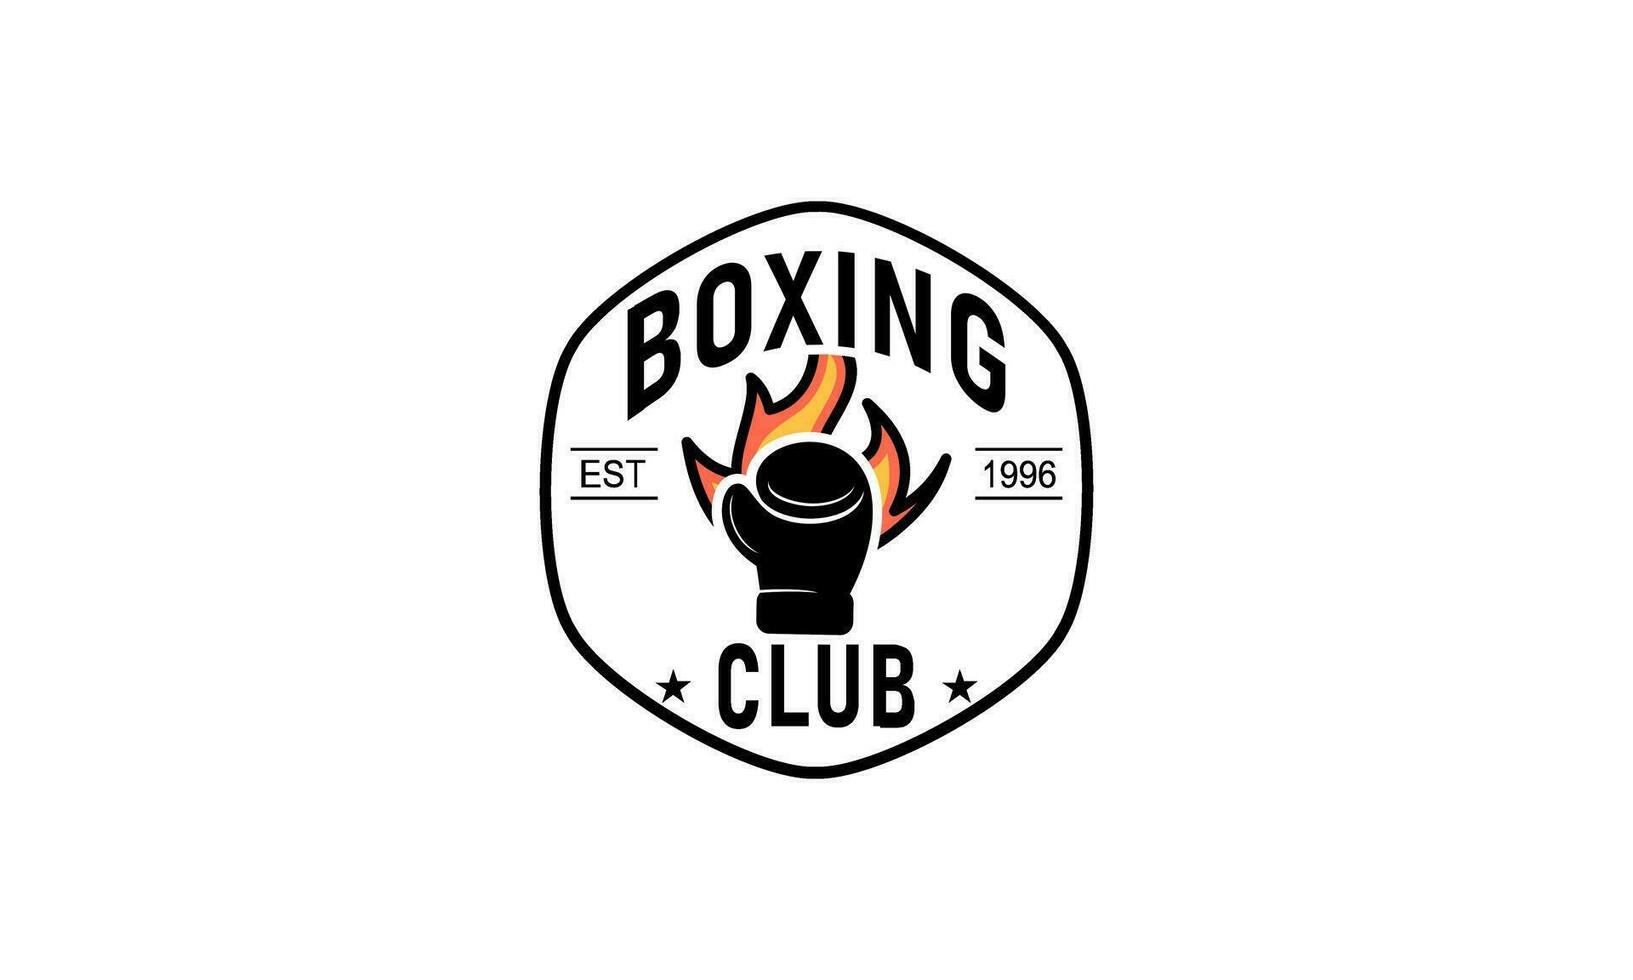 Boxing logo design template vector 25418176 Vector Art at Vecteezy